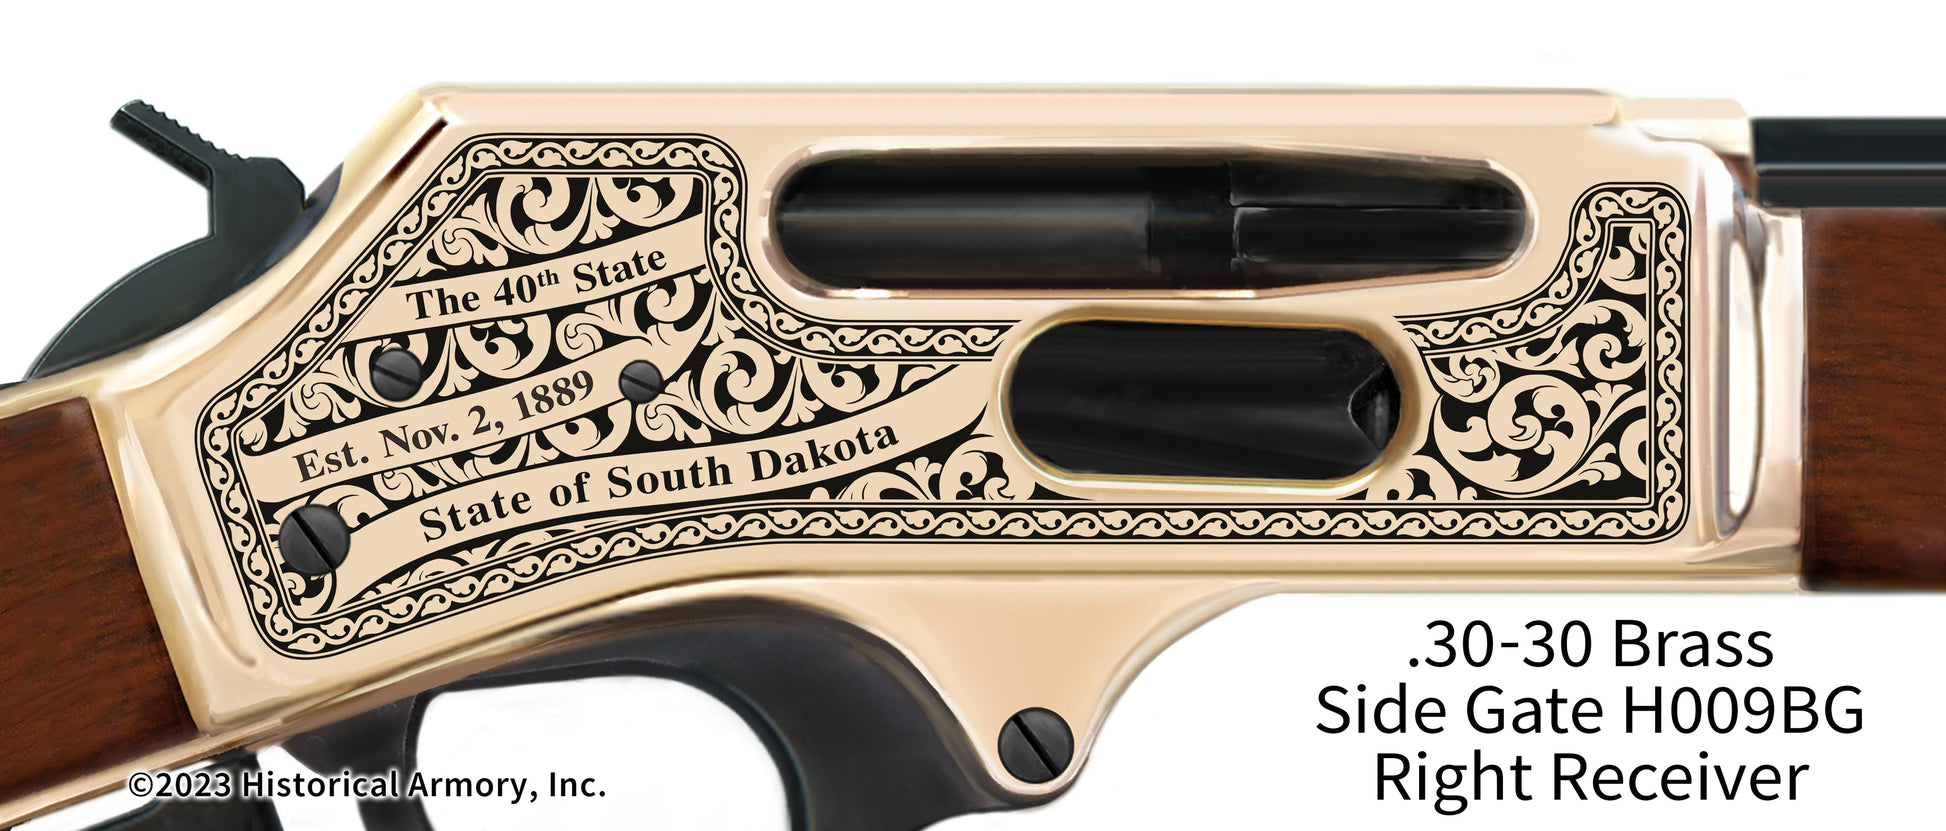 Bennett County South Dakota Engraved Henry .30-30 Brass Side Gate Rifle